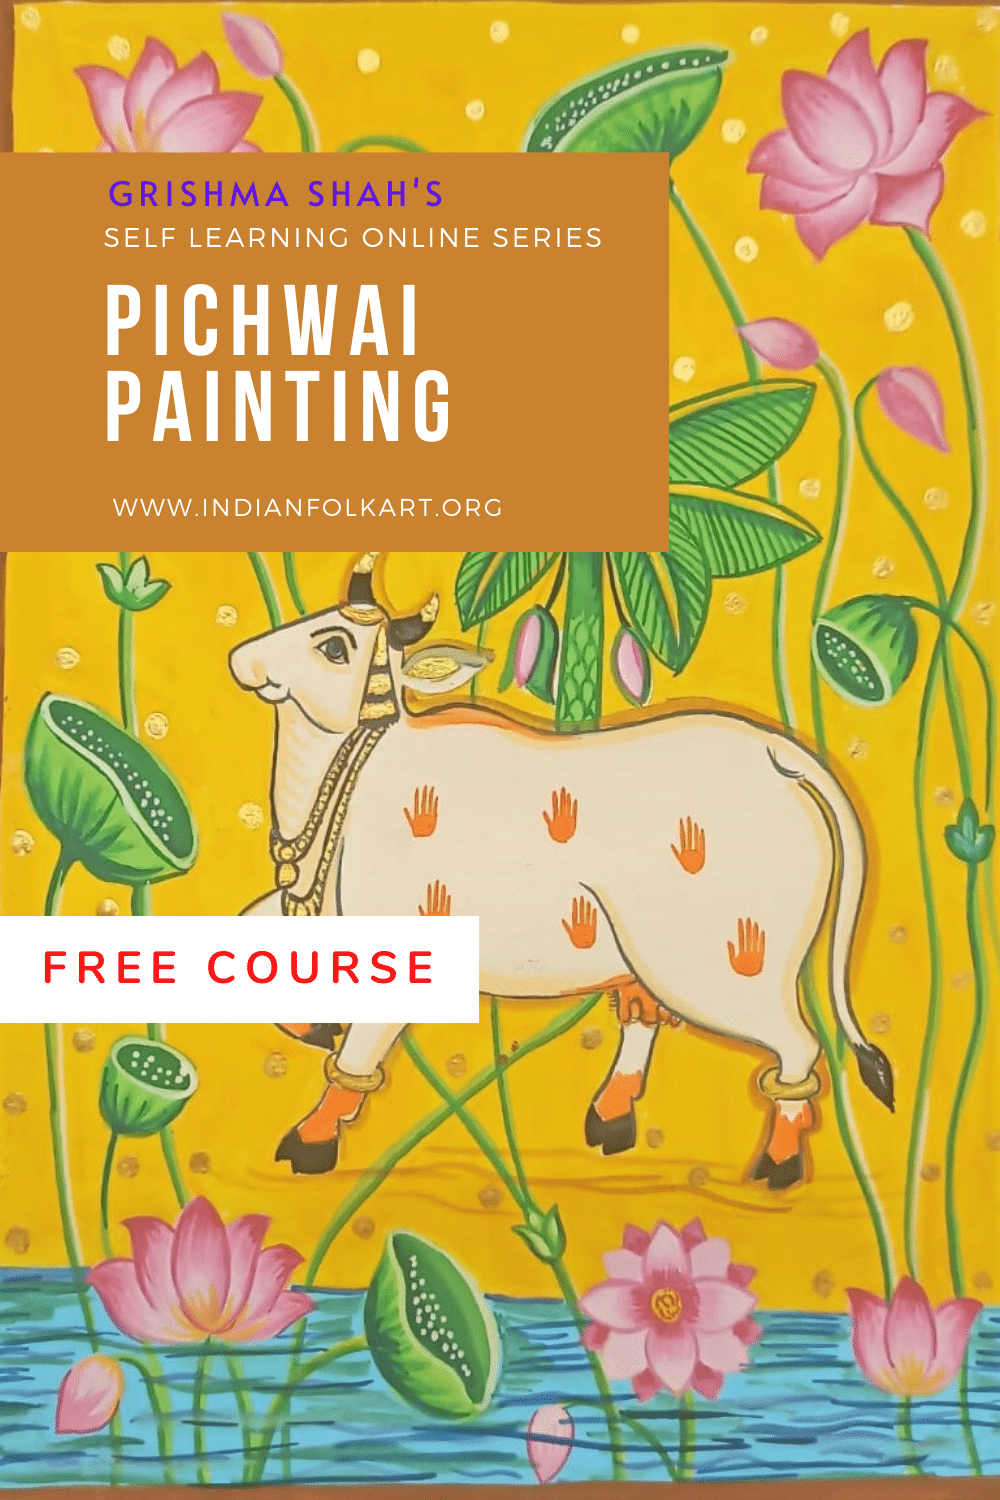 GS03 Pichwai Painting Short Course, “Pichwai Cow”